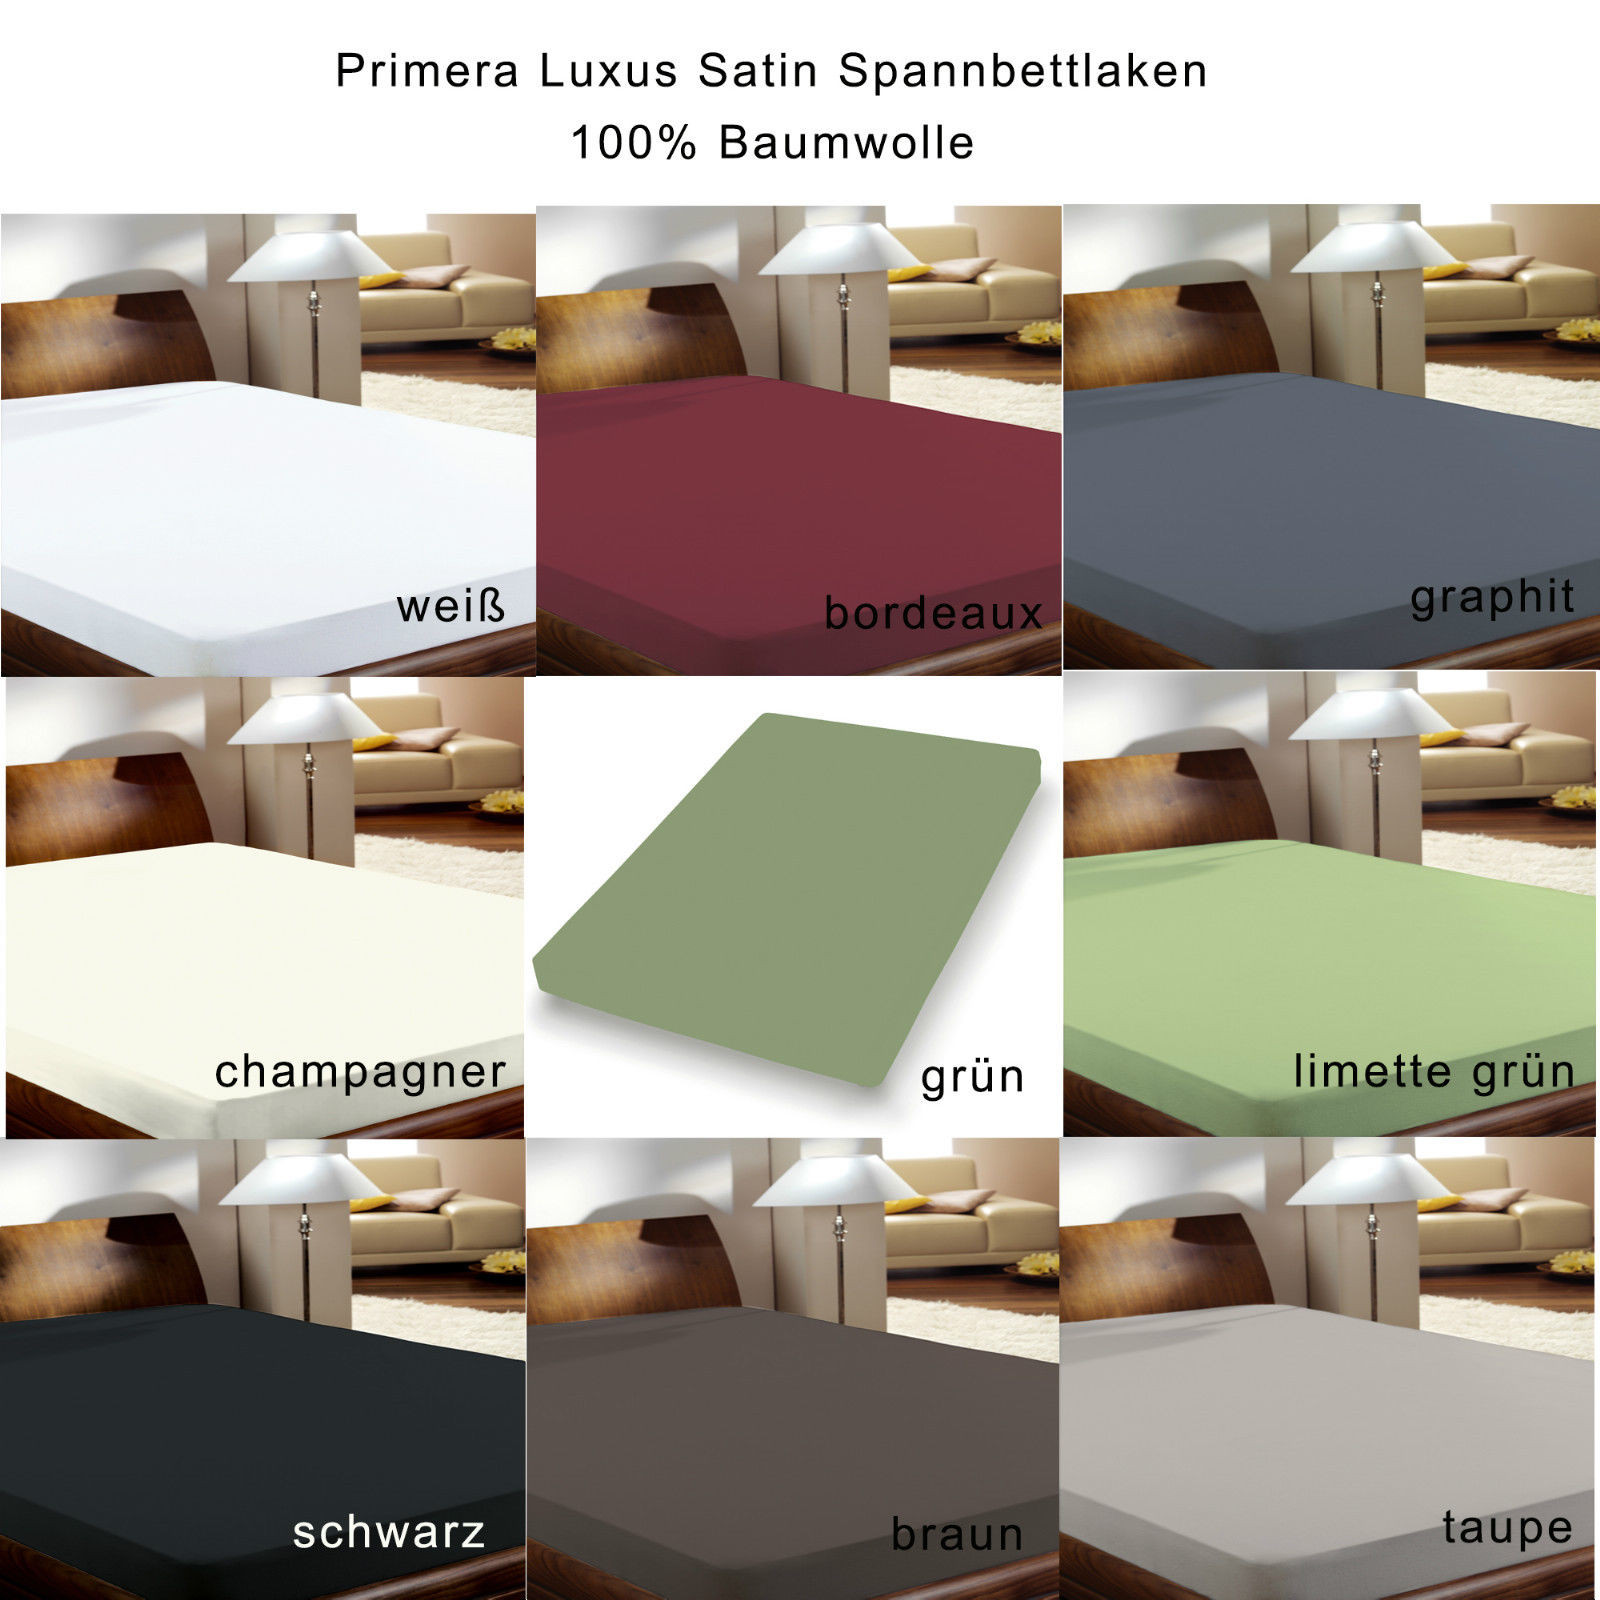 Primera Luxus Satin Spannbettlaken 100x200 150x200 190x200 in 9 Farben